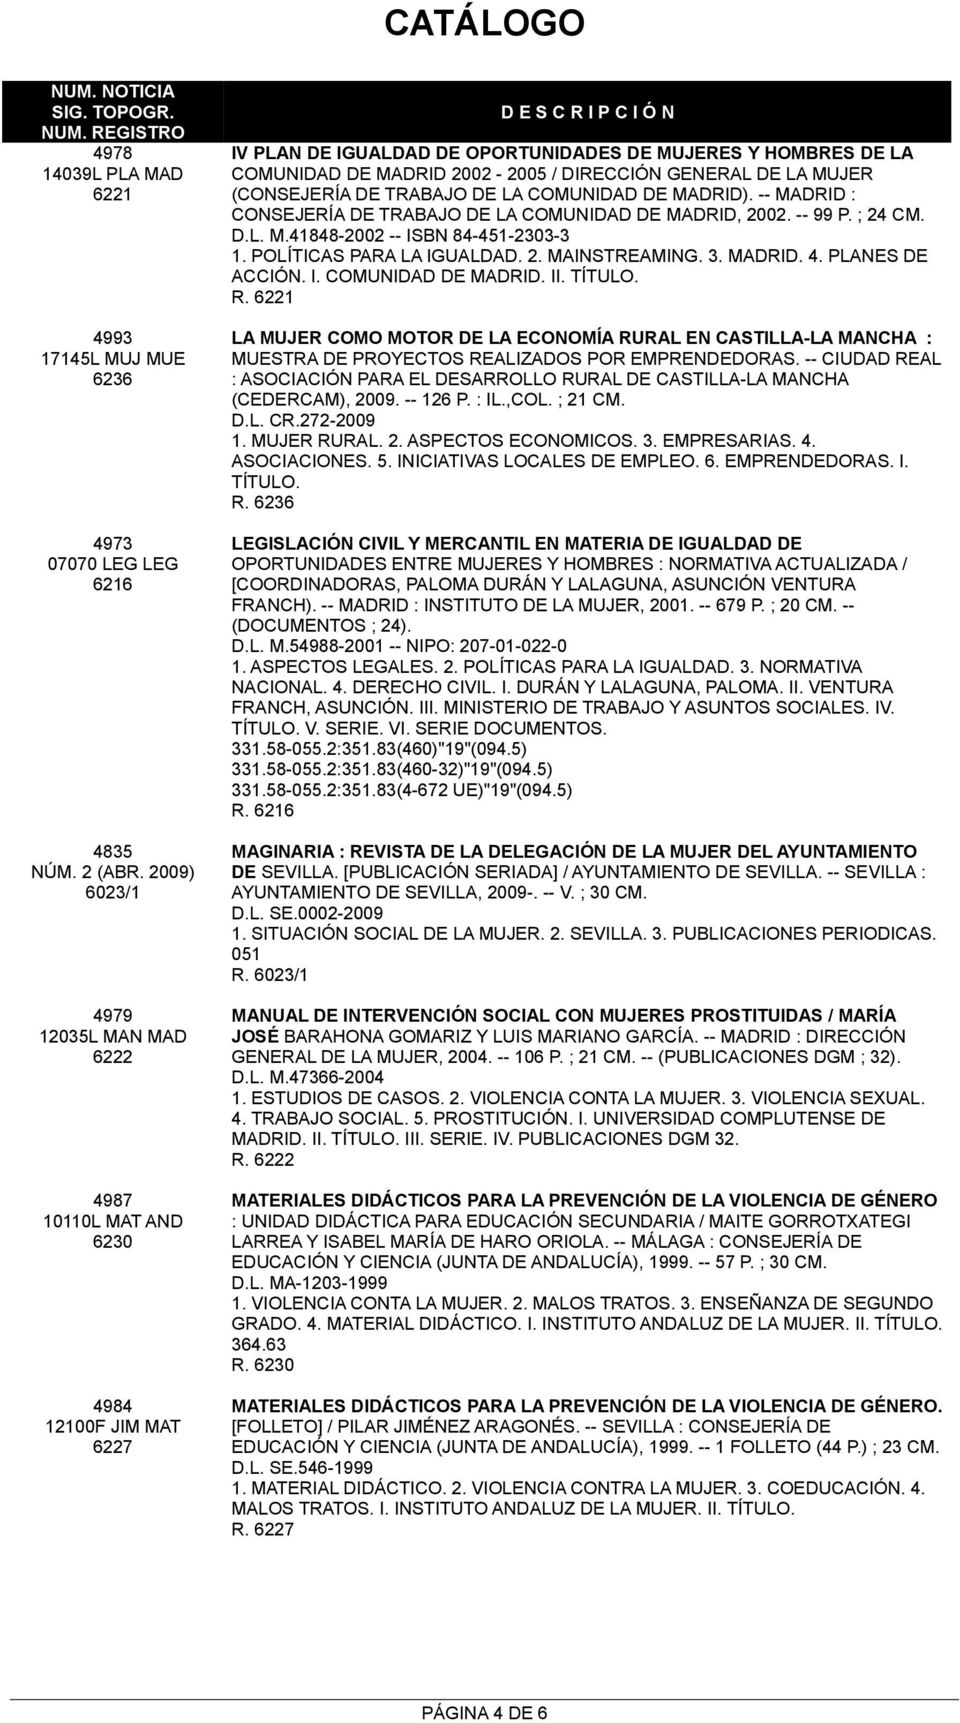 GENERAL DE LA MUJER (CONSEJERÍA DE TRABAJO DE LA COMUNIDAD DE MADRID). -- MADRID : CONSEJERÍA DE TRABAJO DE LA COMUNIDAD DE MADRID, 2002. -- 99 P. ; 24 CM. D.L. M.41848-2002 -- ISBN 84-451-2303-3 1.